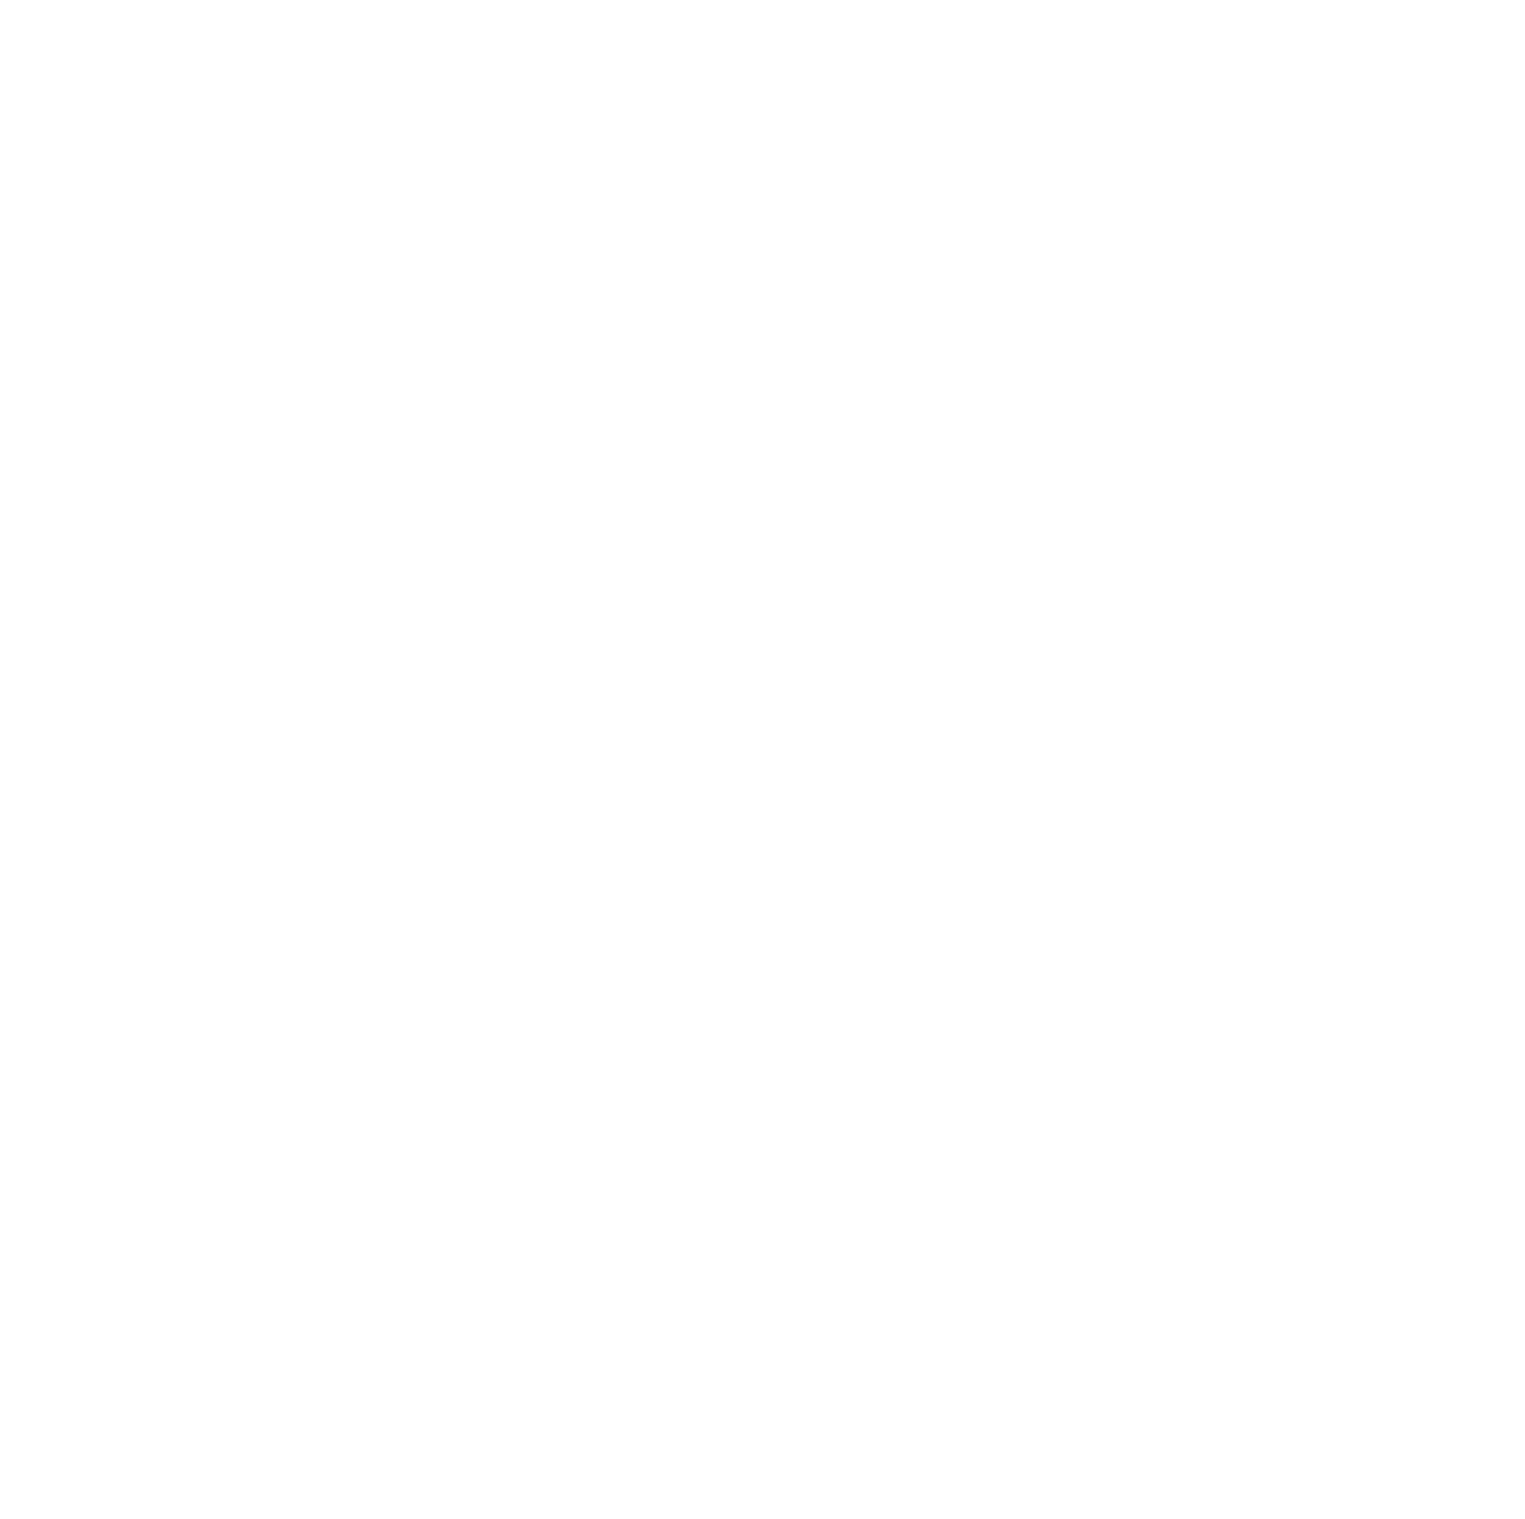 AMTD IDEA Group logo pour fonds sombres (PNG transparent)